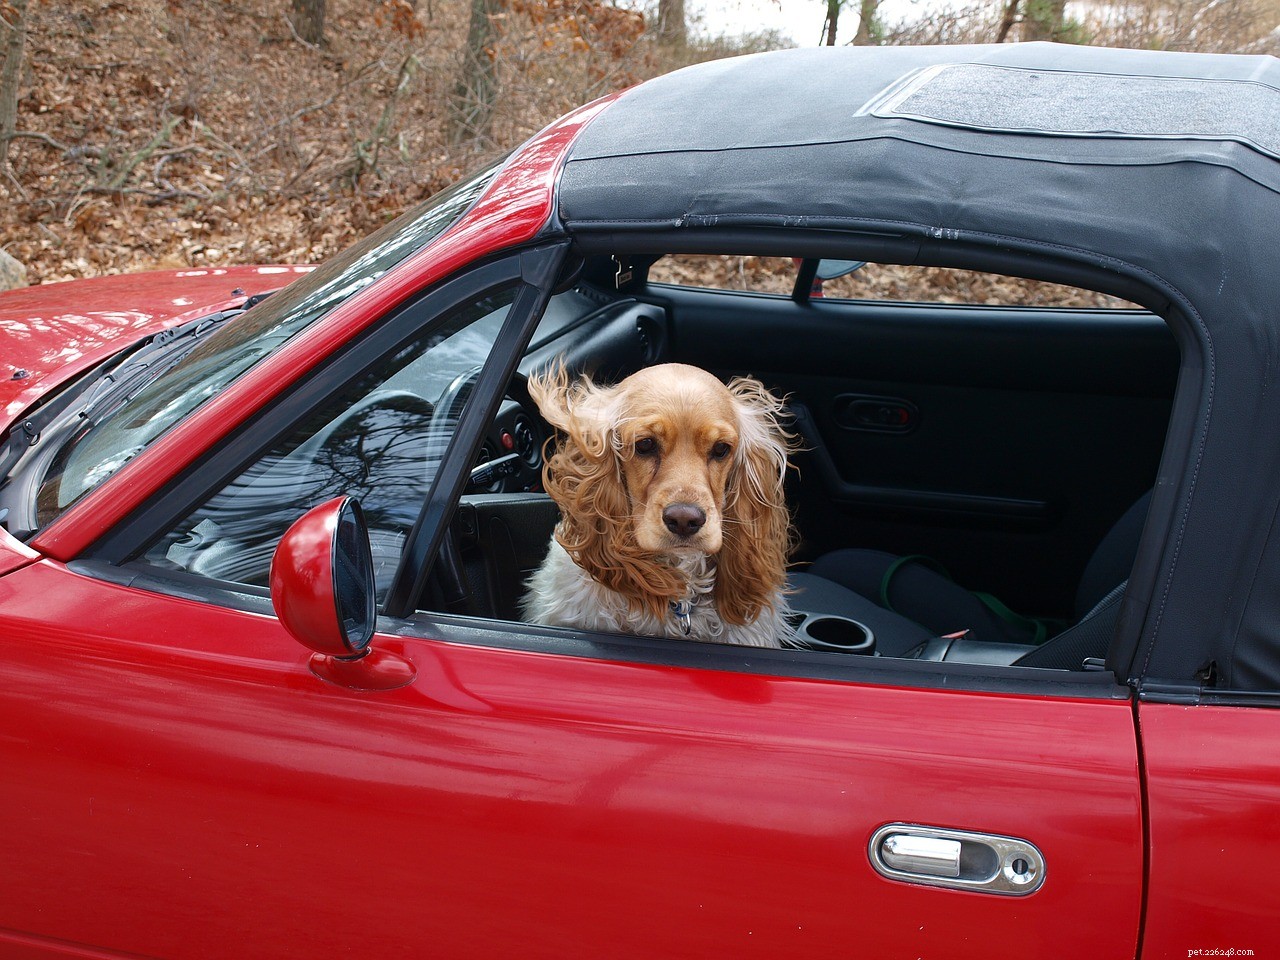 Guidare con un cane:l attrezzatura giusta in macchina